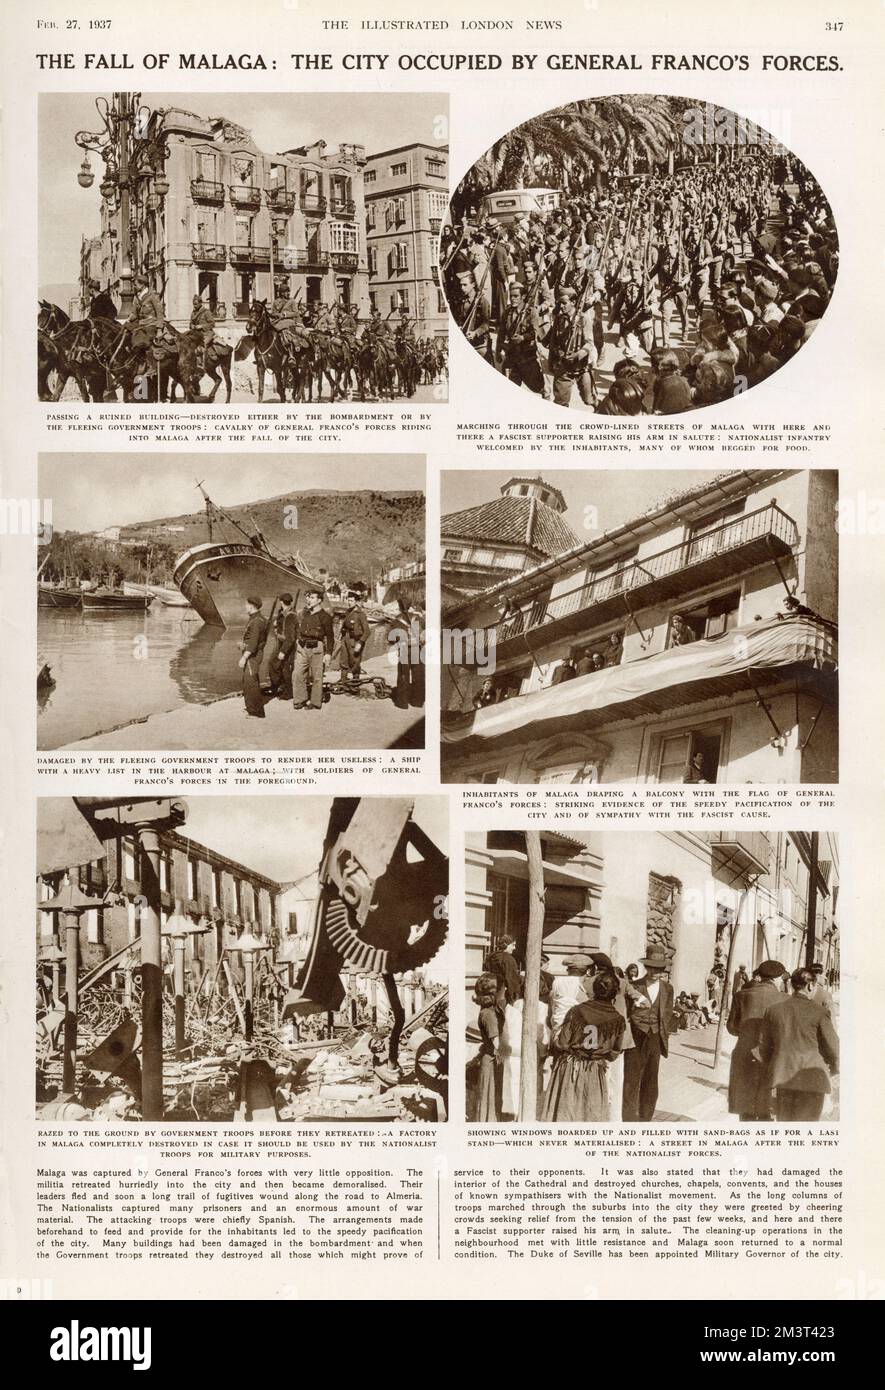 La caduta di Malaga: La città occupata dalle forze del generale Franco. Guerra civile spagnola. Pagina del Notiziario illustrato di Londra, 27th febbraio 1937. Foto Stock